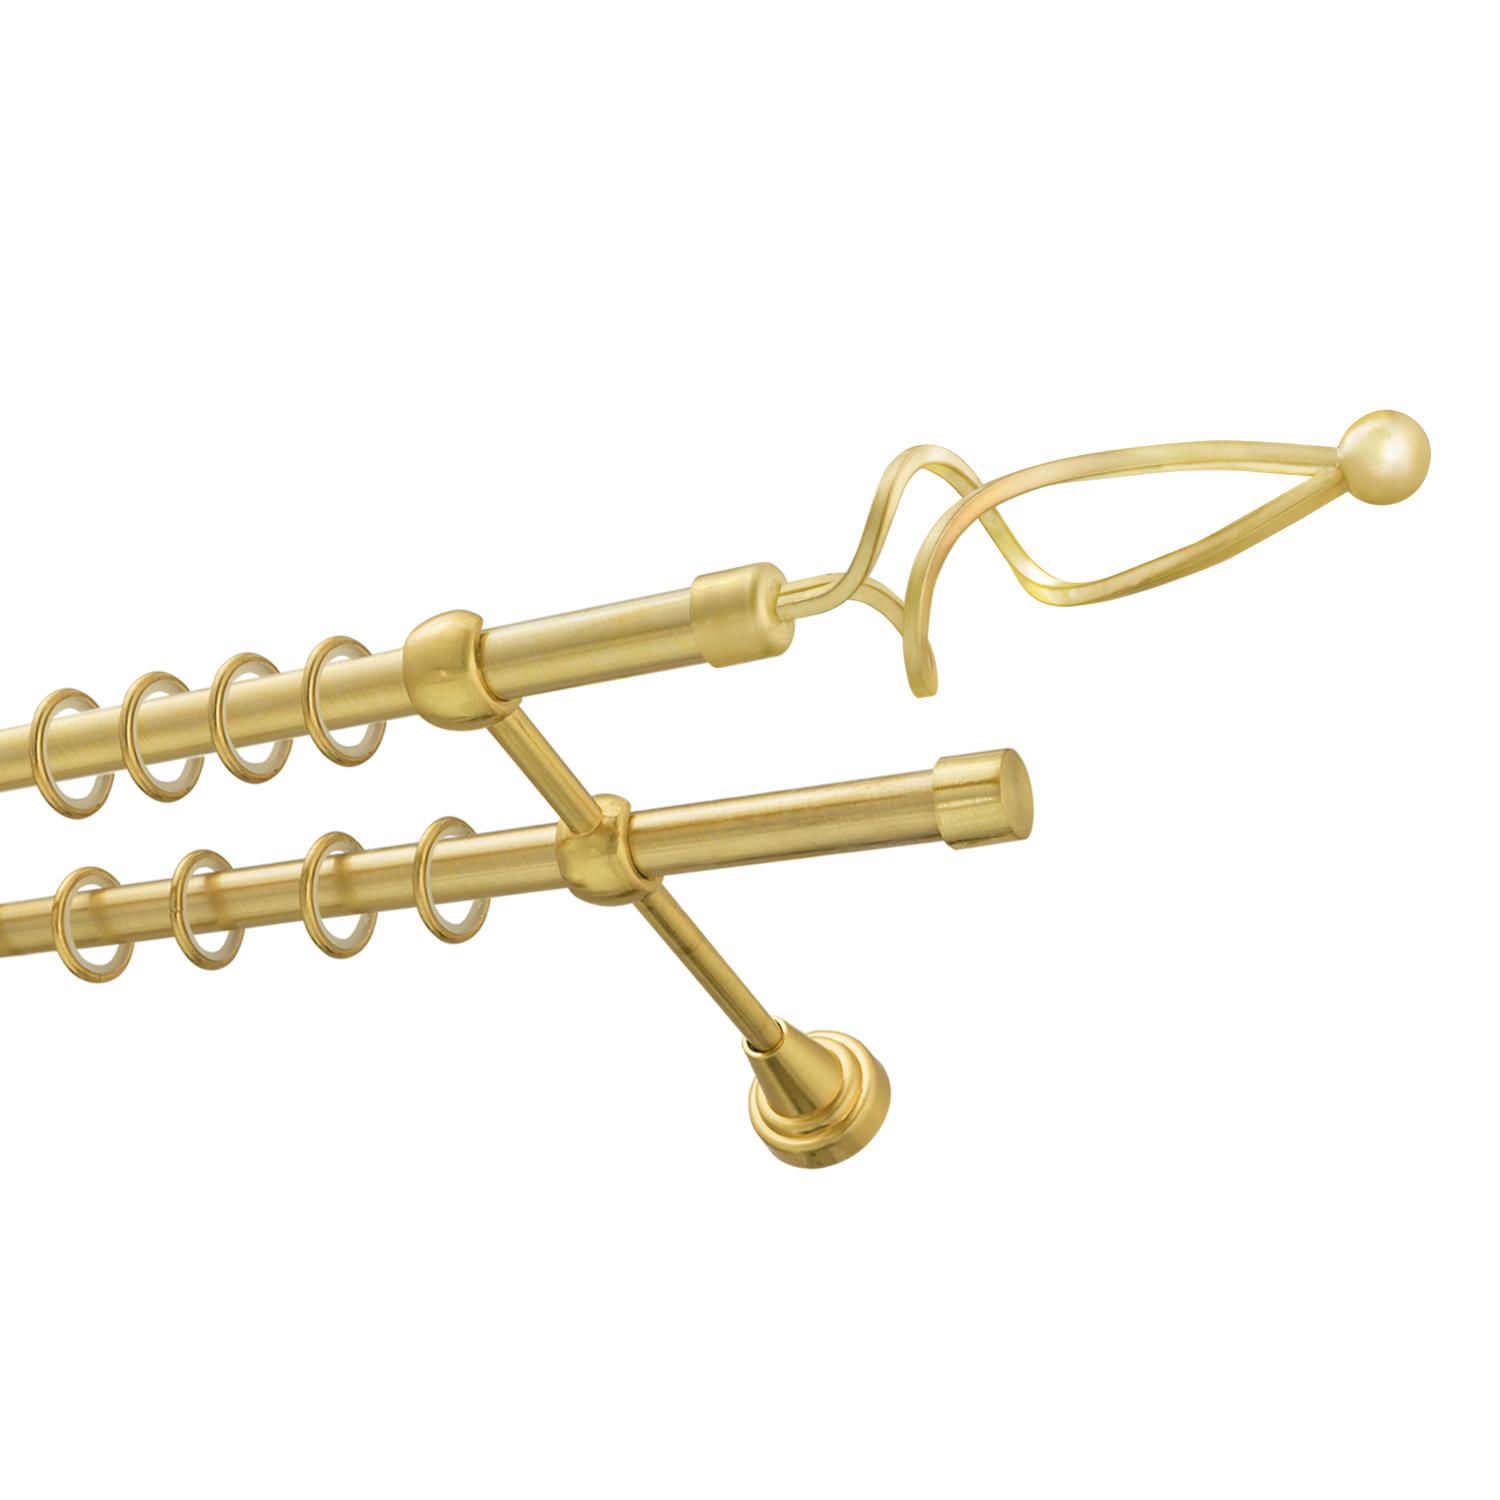 Металлический карниз для штор Жемчужина, двухрядный 16/16 мм, золото, гладкая штанга, длина 240 см - фото Wikidecor.ru